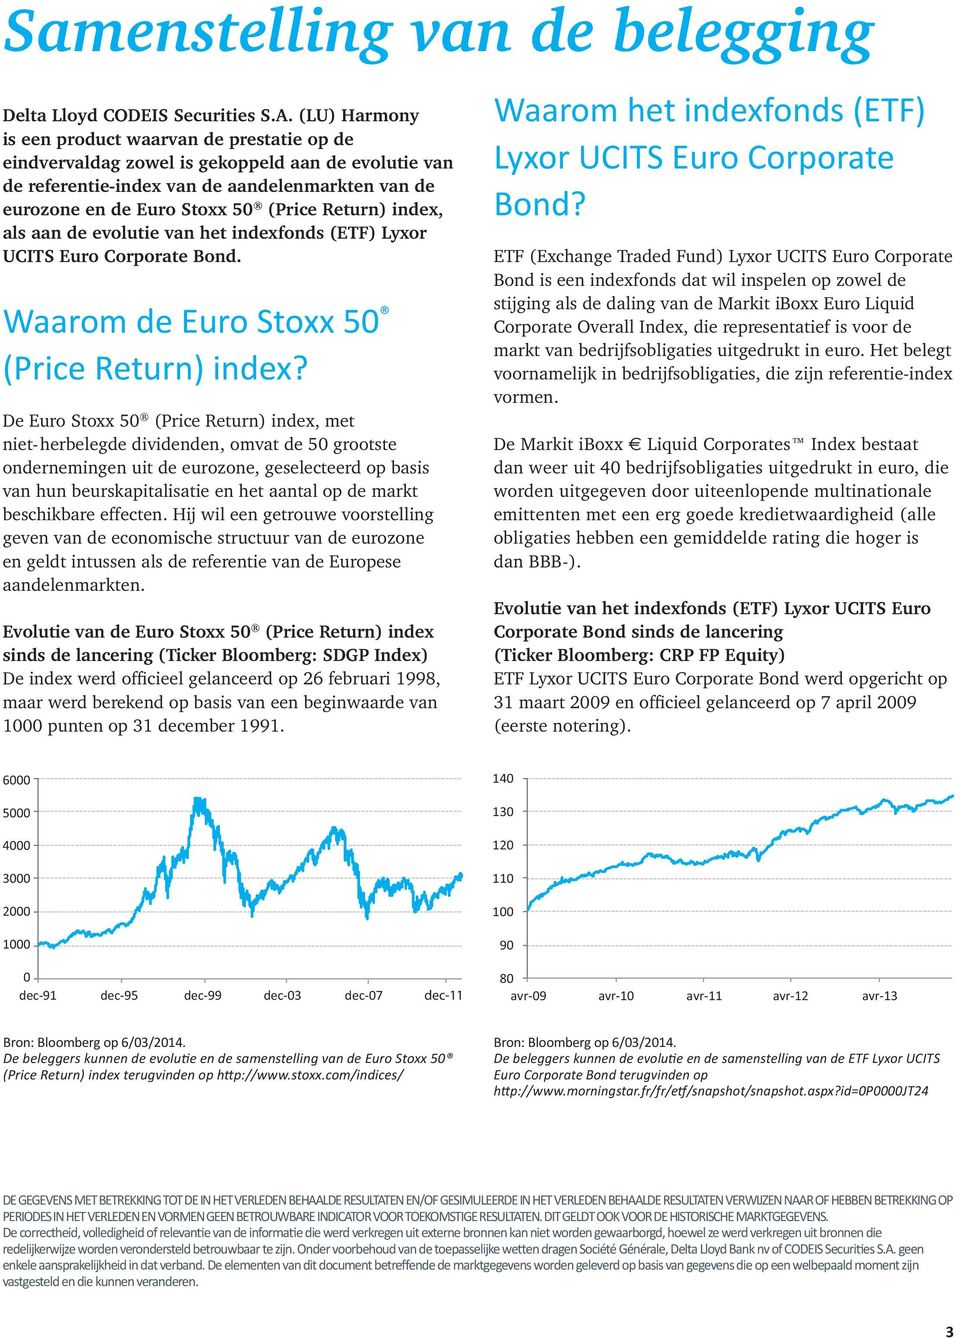 Return) index, als aan de evolutie van het indexfonds (ETF) Lyxor UCITS Euro Corporate Bond. Waarom de Euro Stoxx 50 (Price Return) index?